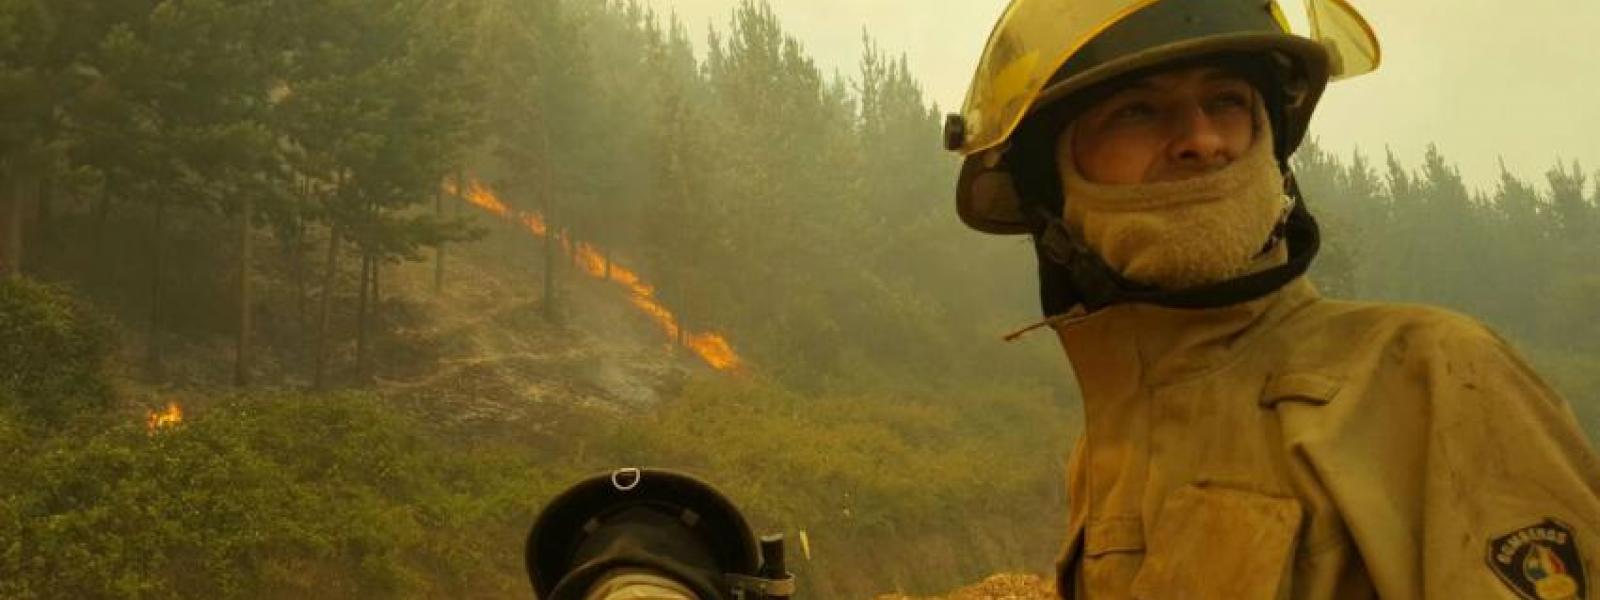 Incendio forestal en la comuna Empedrado, región del Maule, Chile.